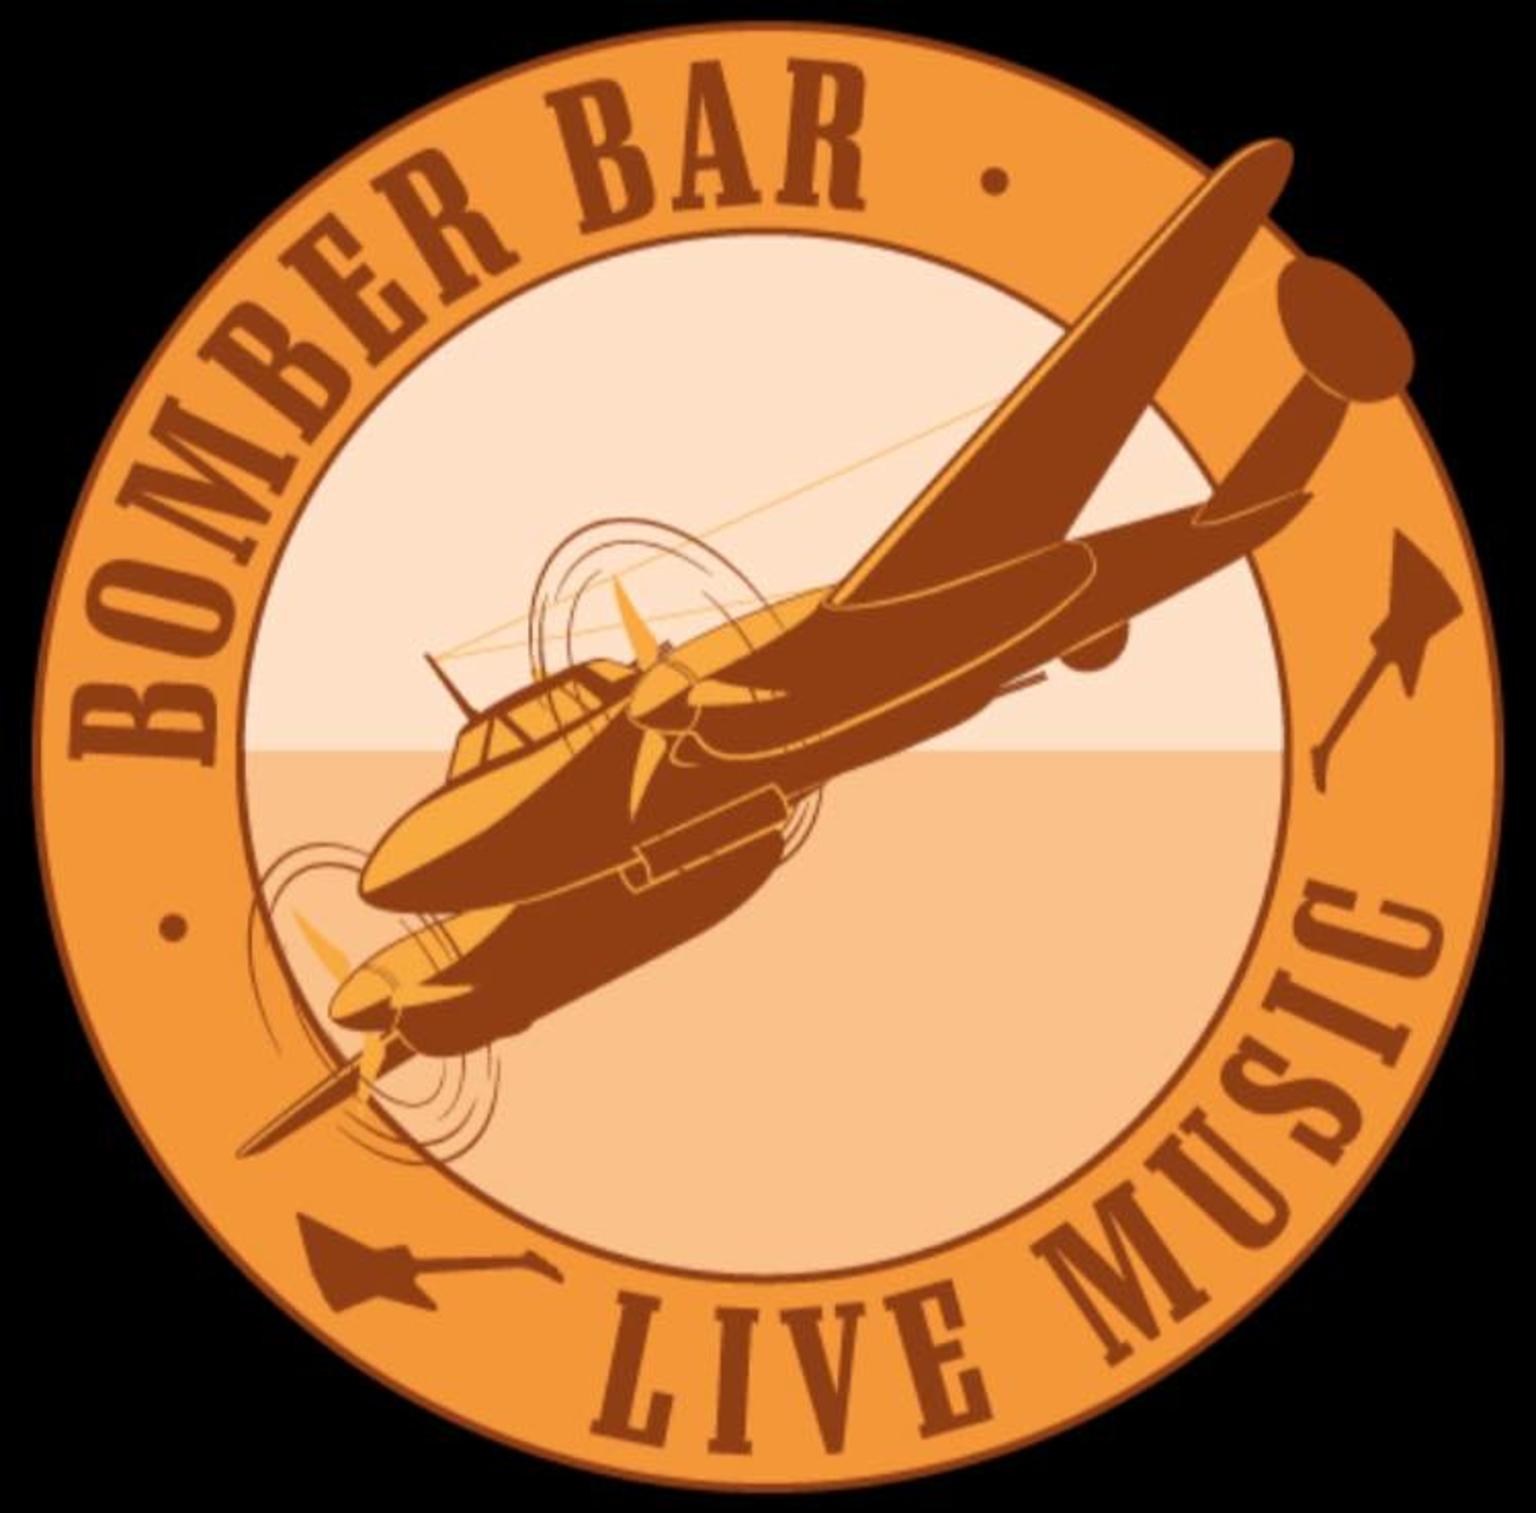 Bomber bar